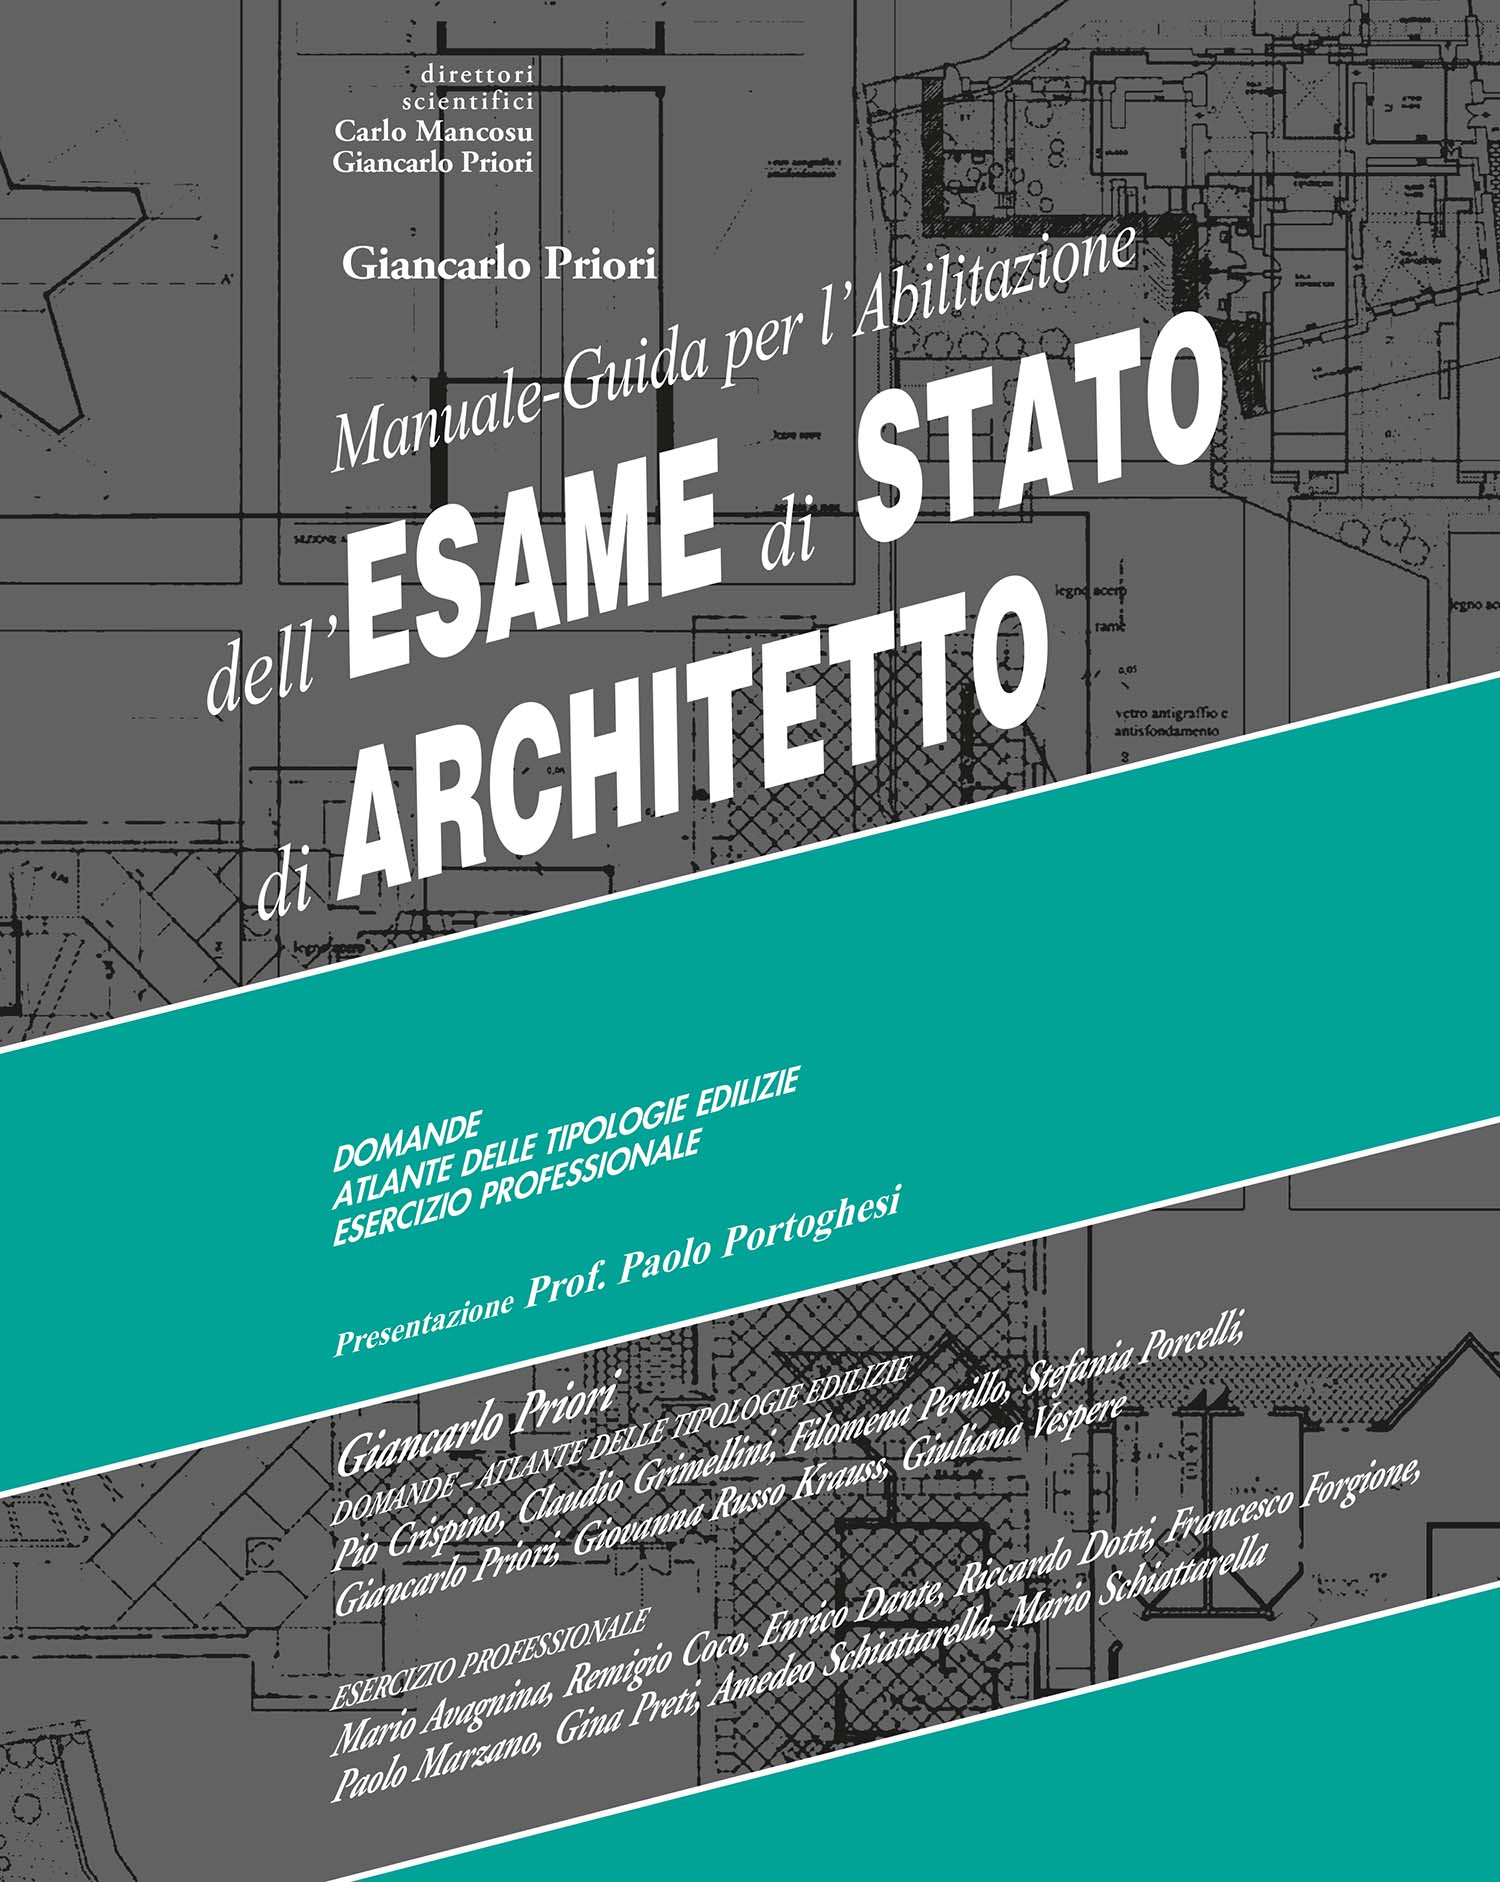 MANUALE - GUIDA per l'ESAME di STATO di ARCHITETTO
Manuale indispensabile per i laureati architetti